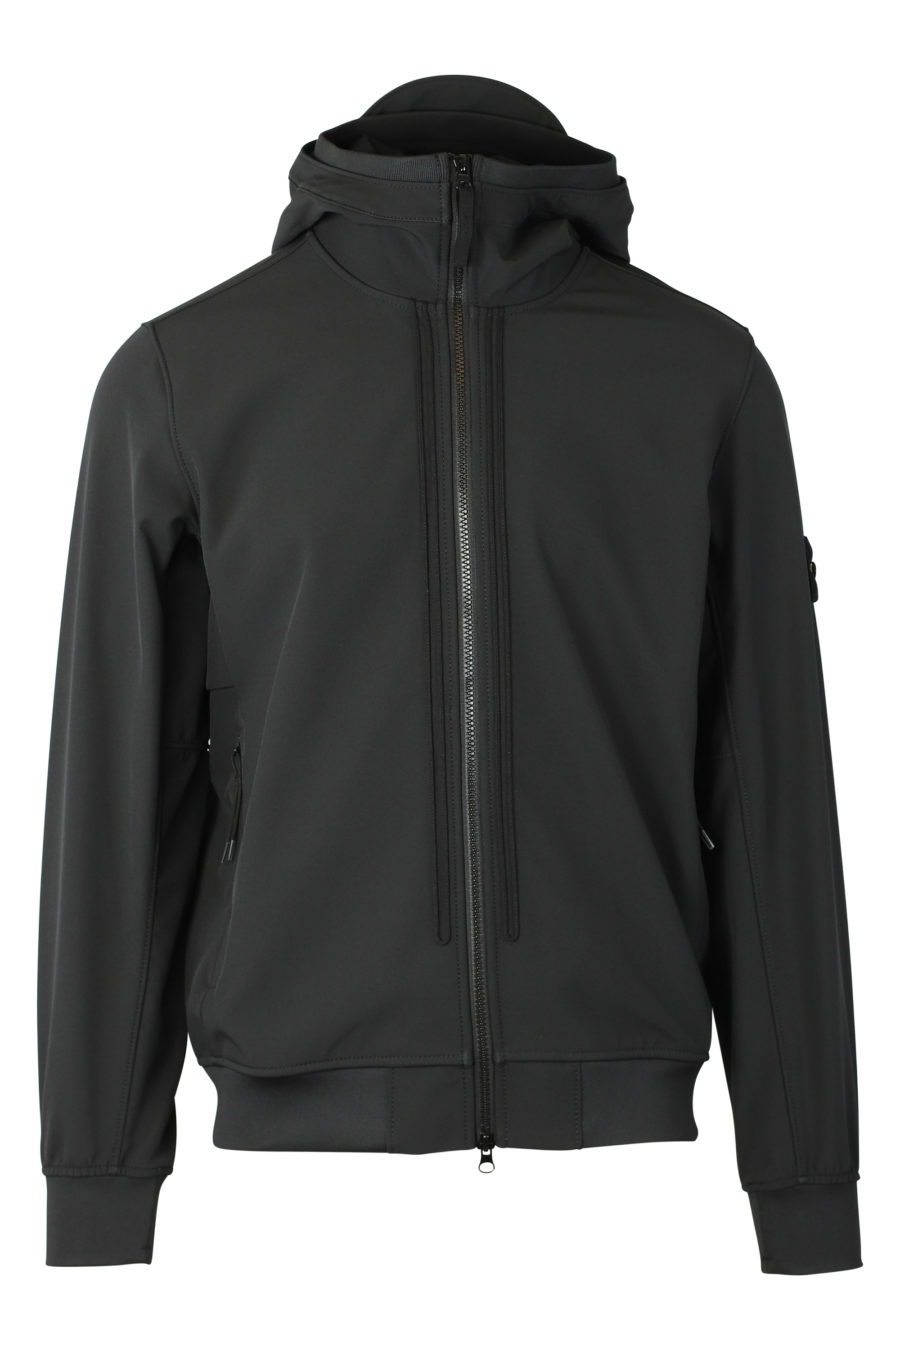 Schwarze Jacke mit Kapuze und Logoaufnäher - IMG 9305